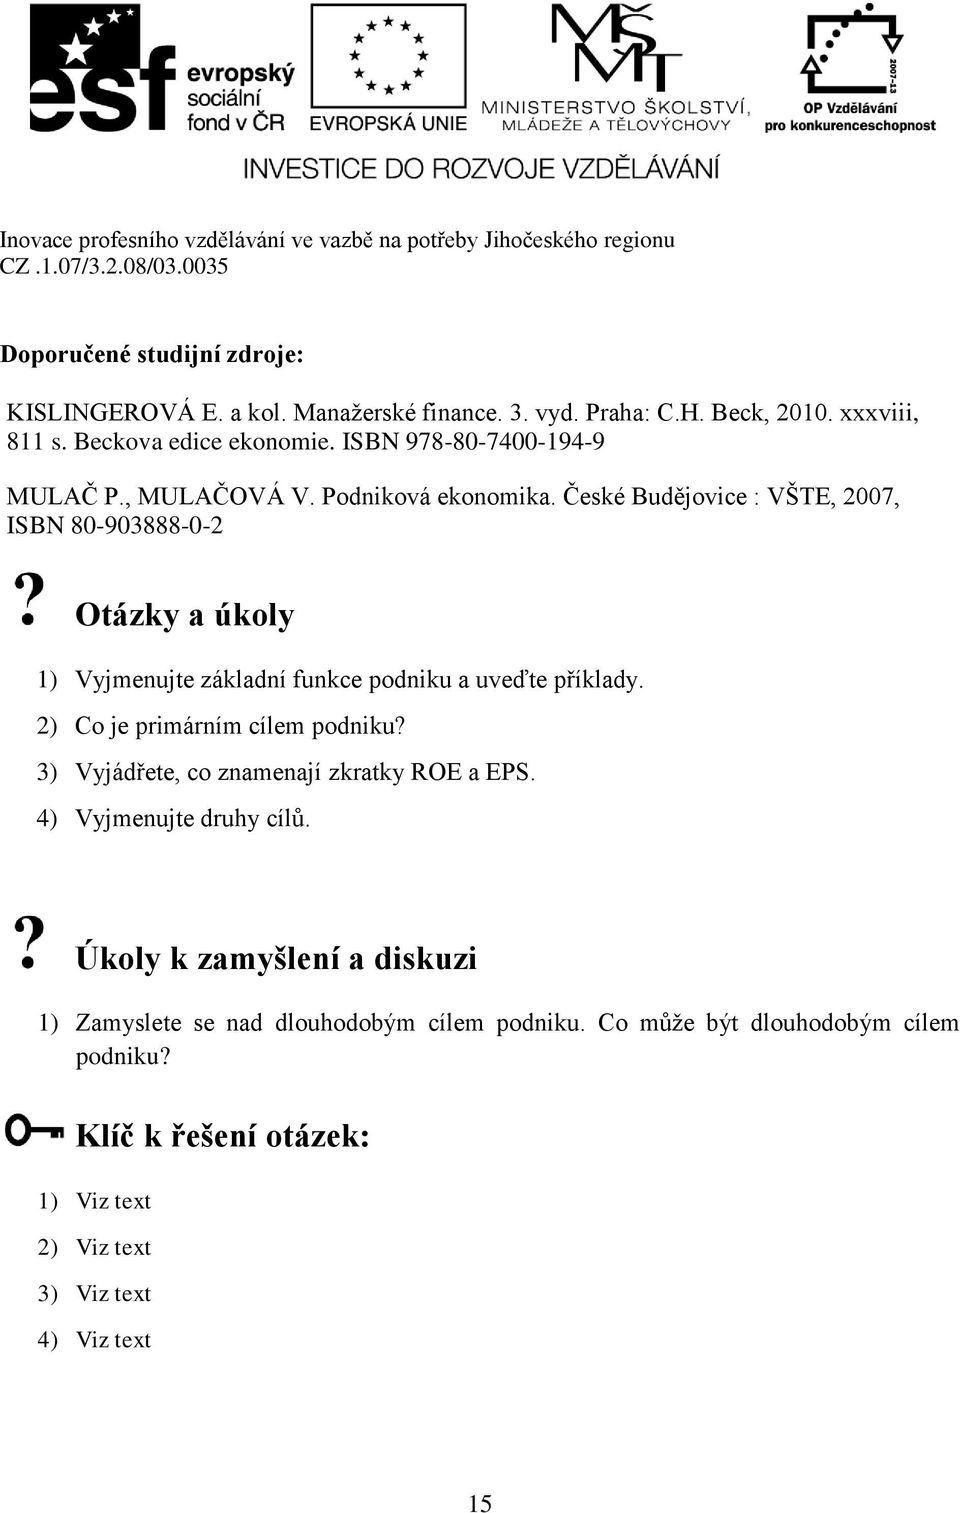 České Budějovice : VŠTE, 2007, ISBN 80-903888-0-2 Otázky a úkoly 1) Vyjmenujte základní funkce podniku a uveďte příklady. 2) Co je primárním cílem podniku?